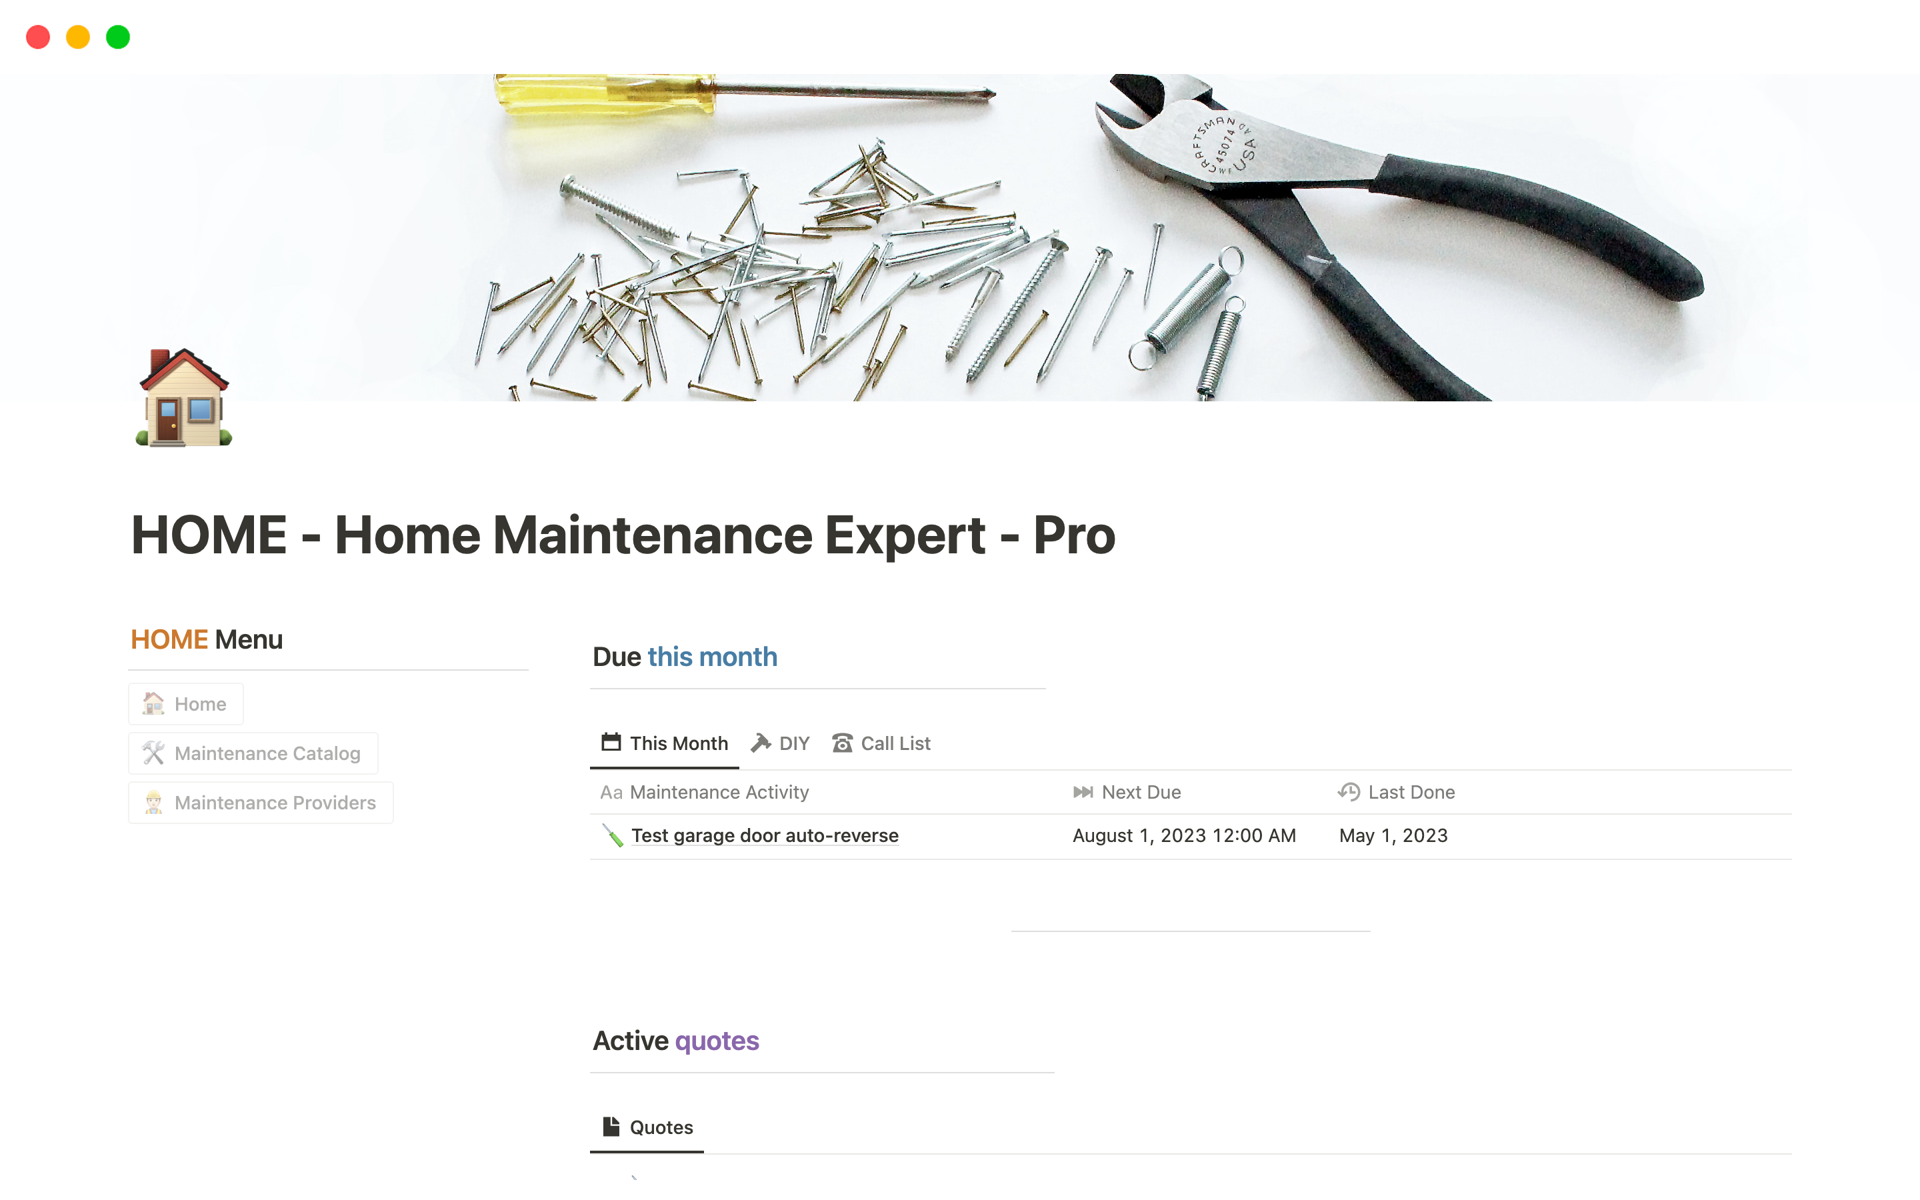 Vista previa de una plantilla para HOME - Home Maintenance Expert - Pro